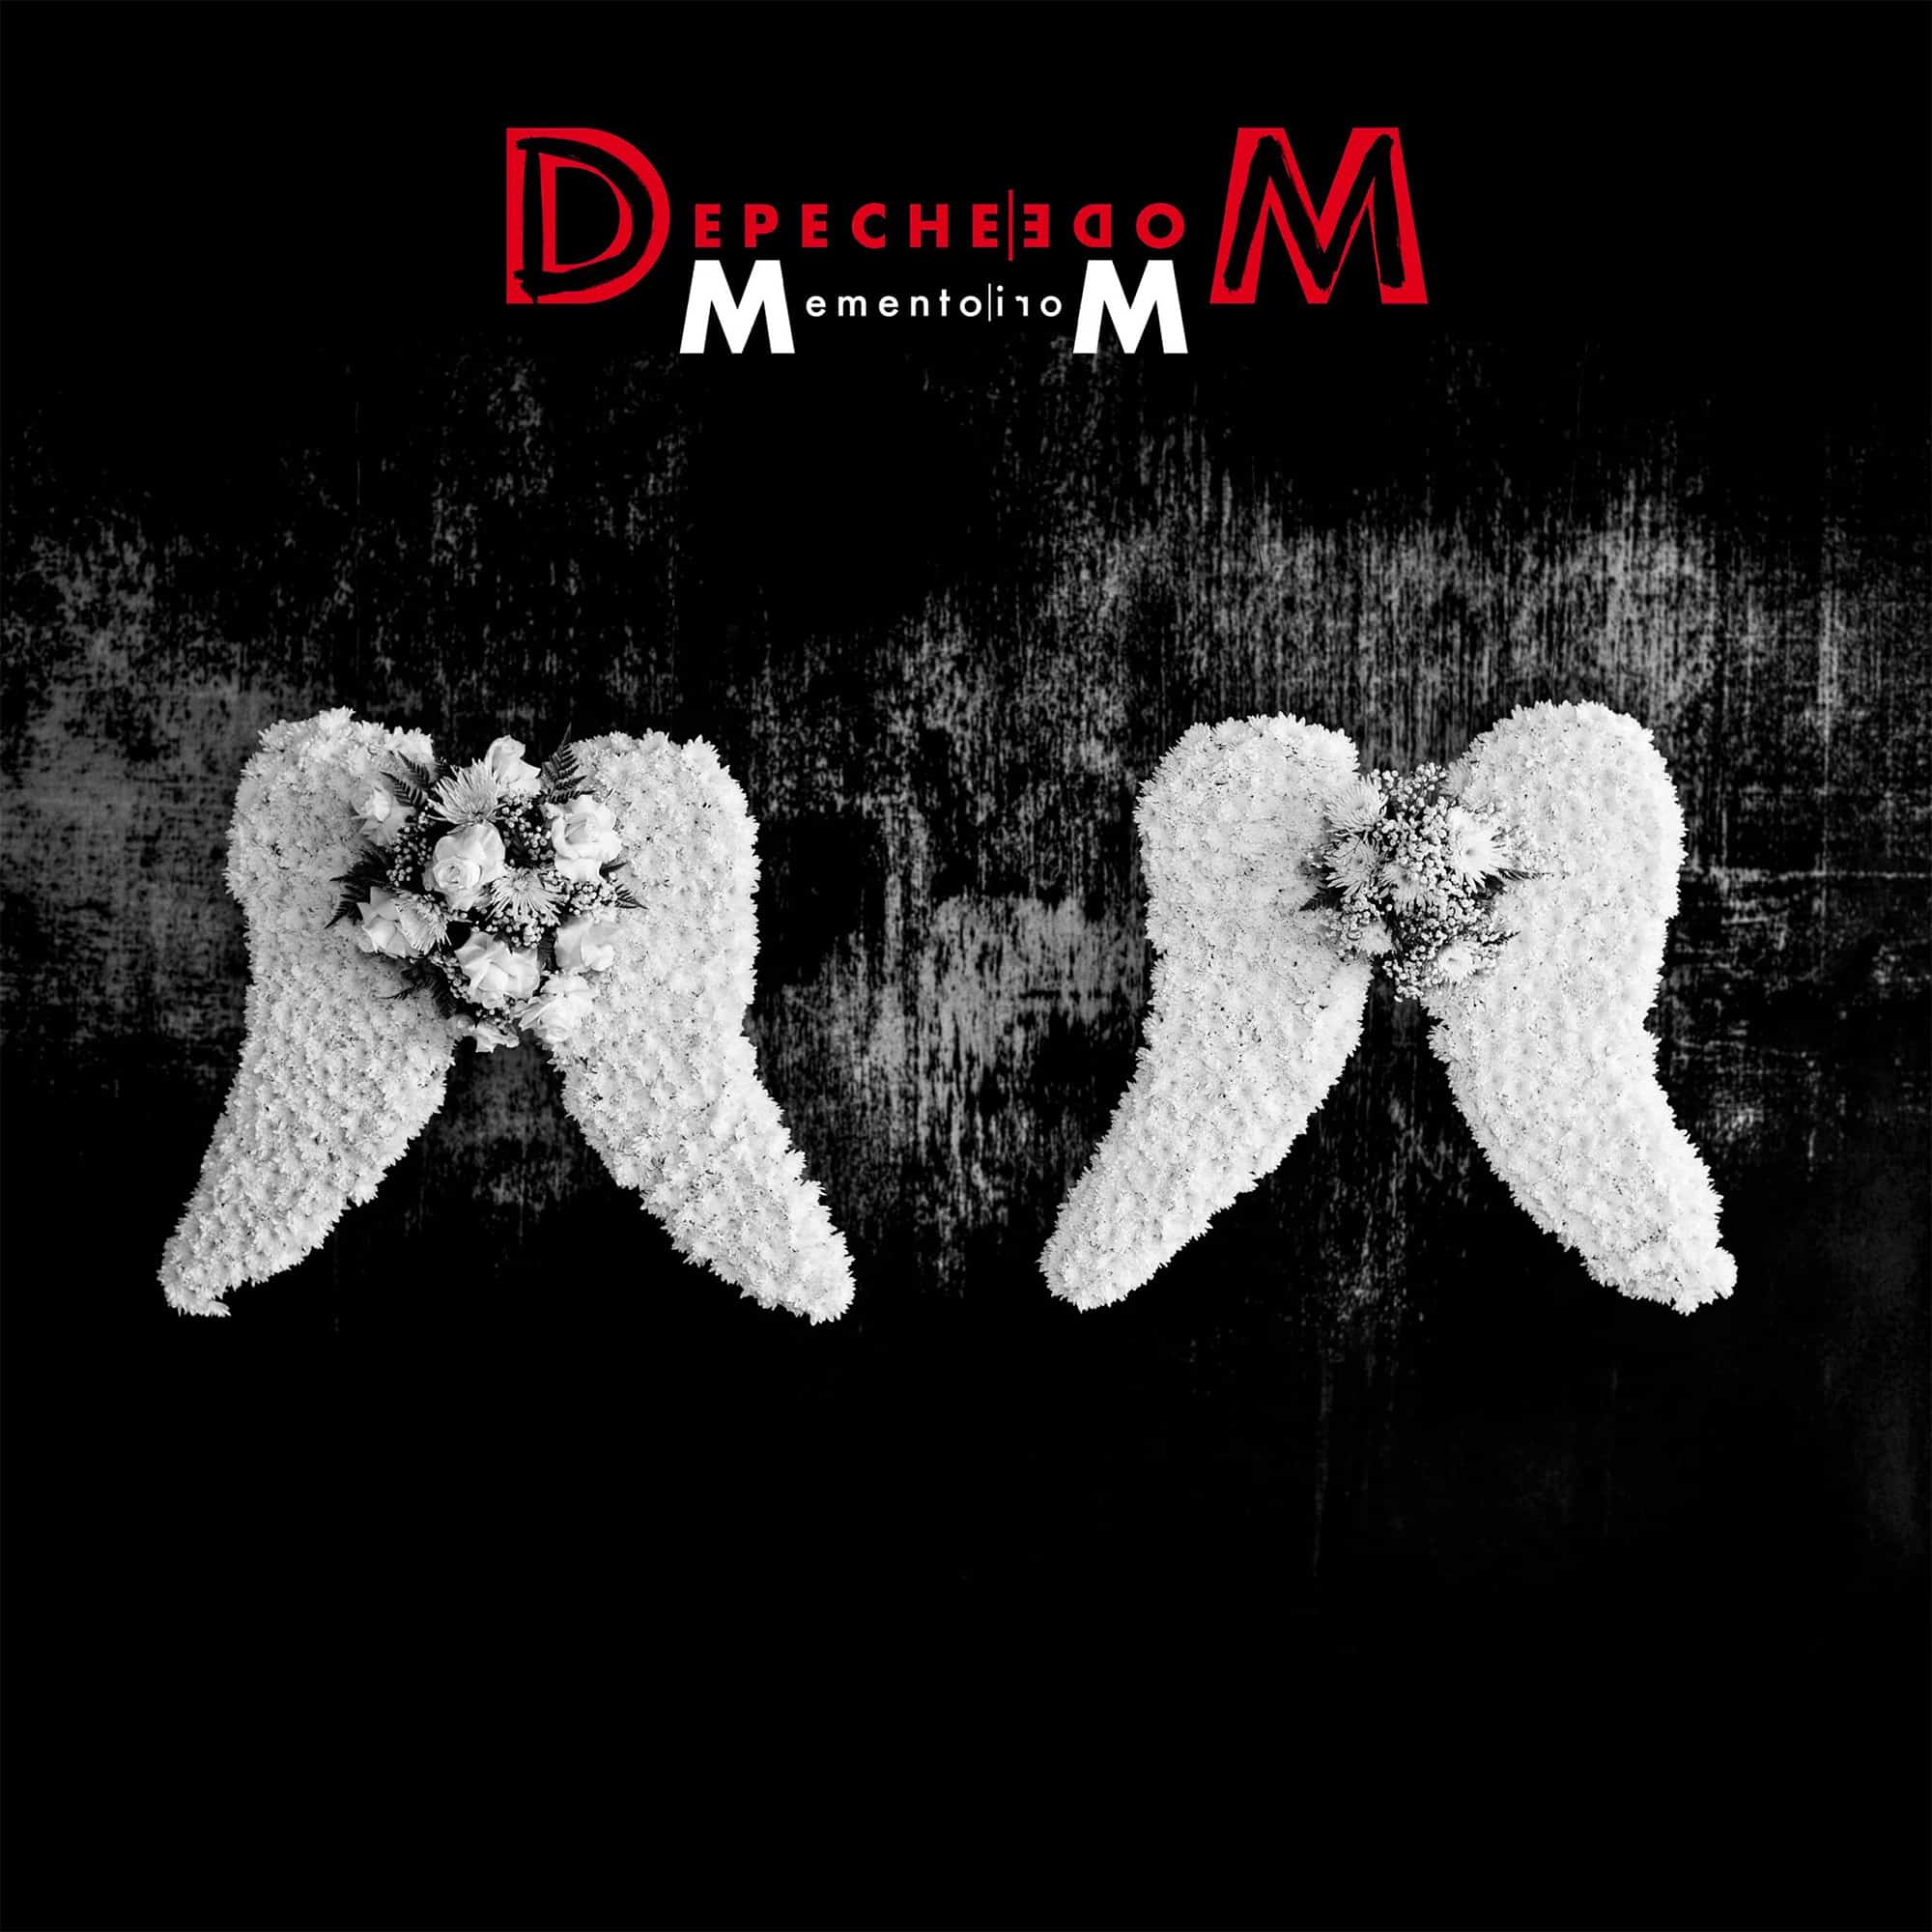 Albumcover von "Depeche Mode: Memento Mori"